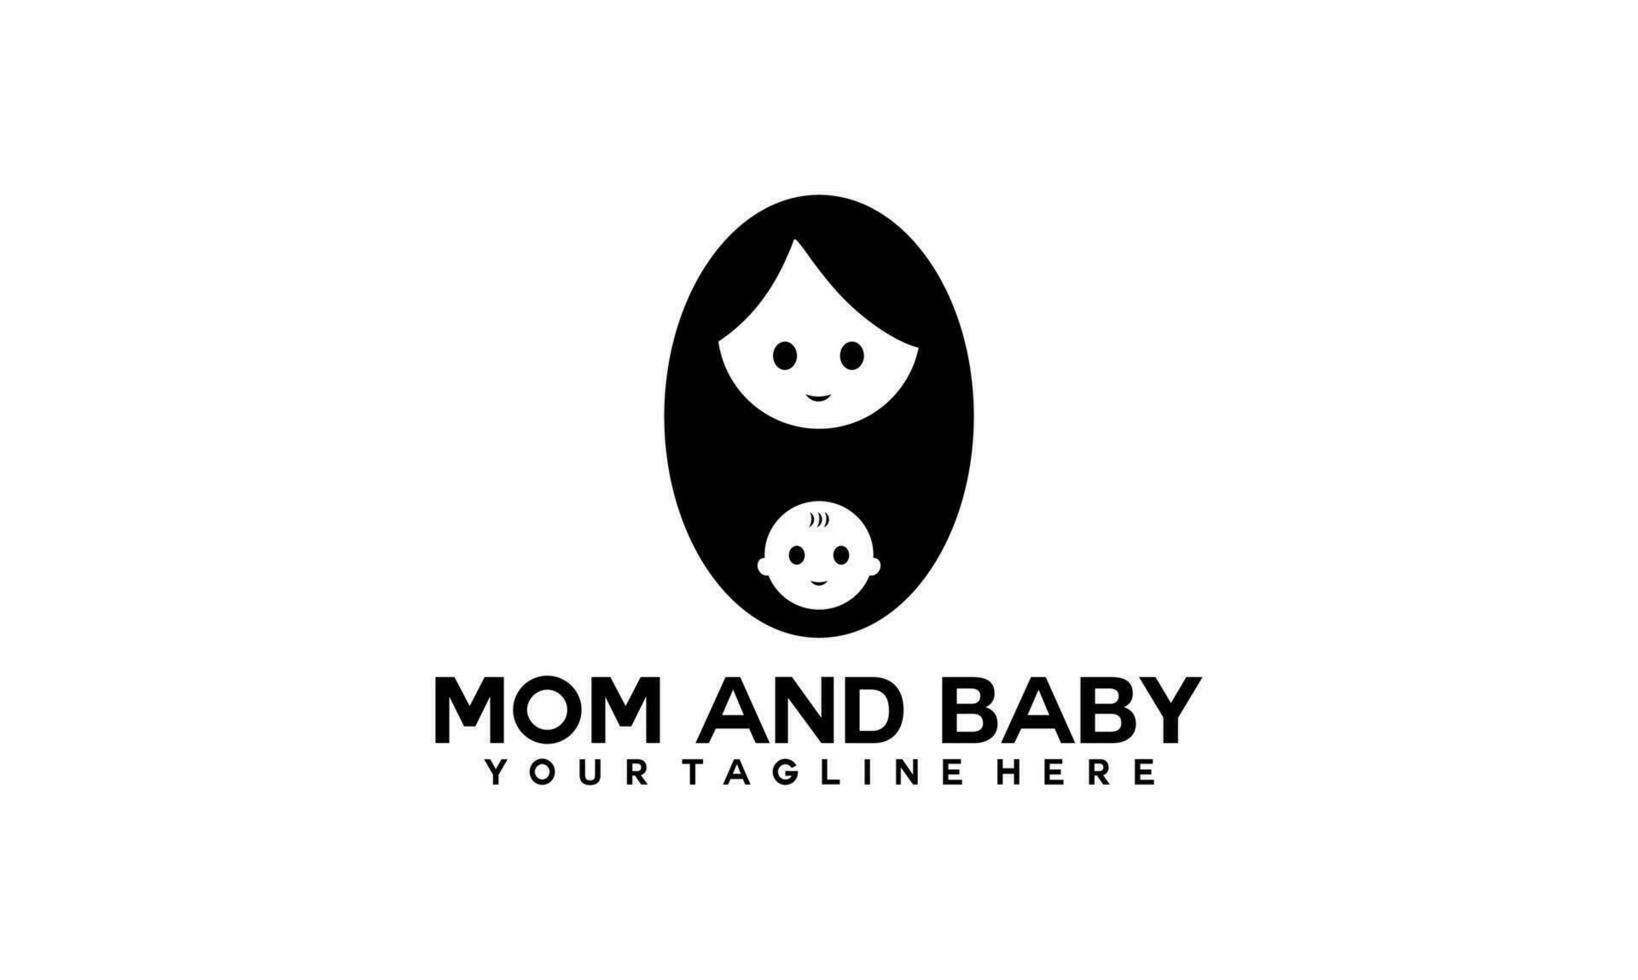 mamma e bambino logo designmom e bambino logo design. madre e bambino nel semplice stile illustrazione. vettore